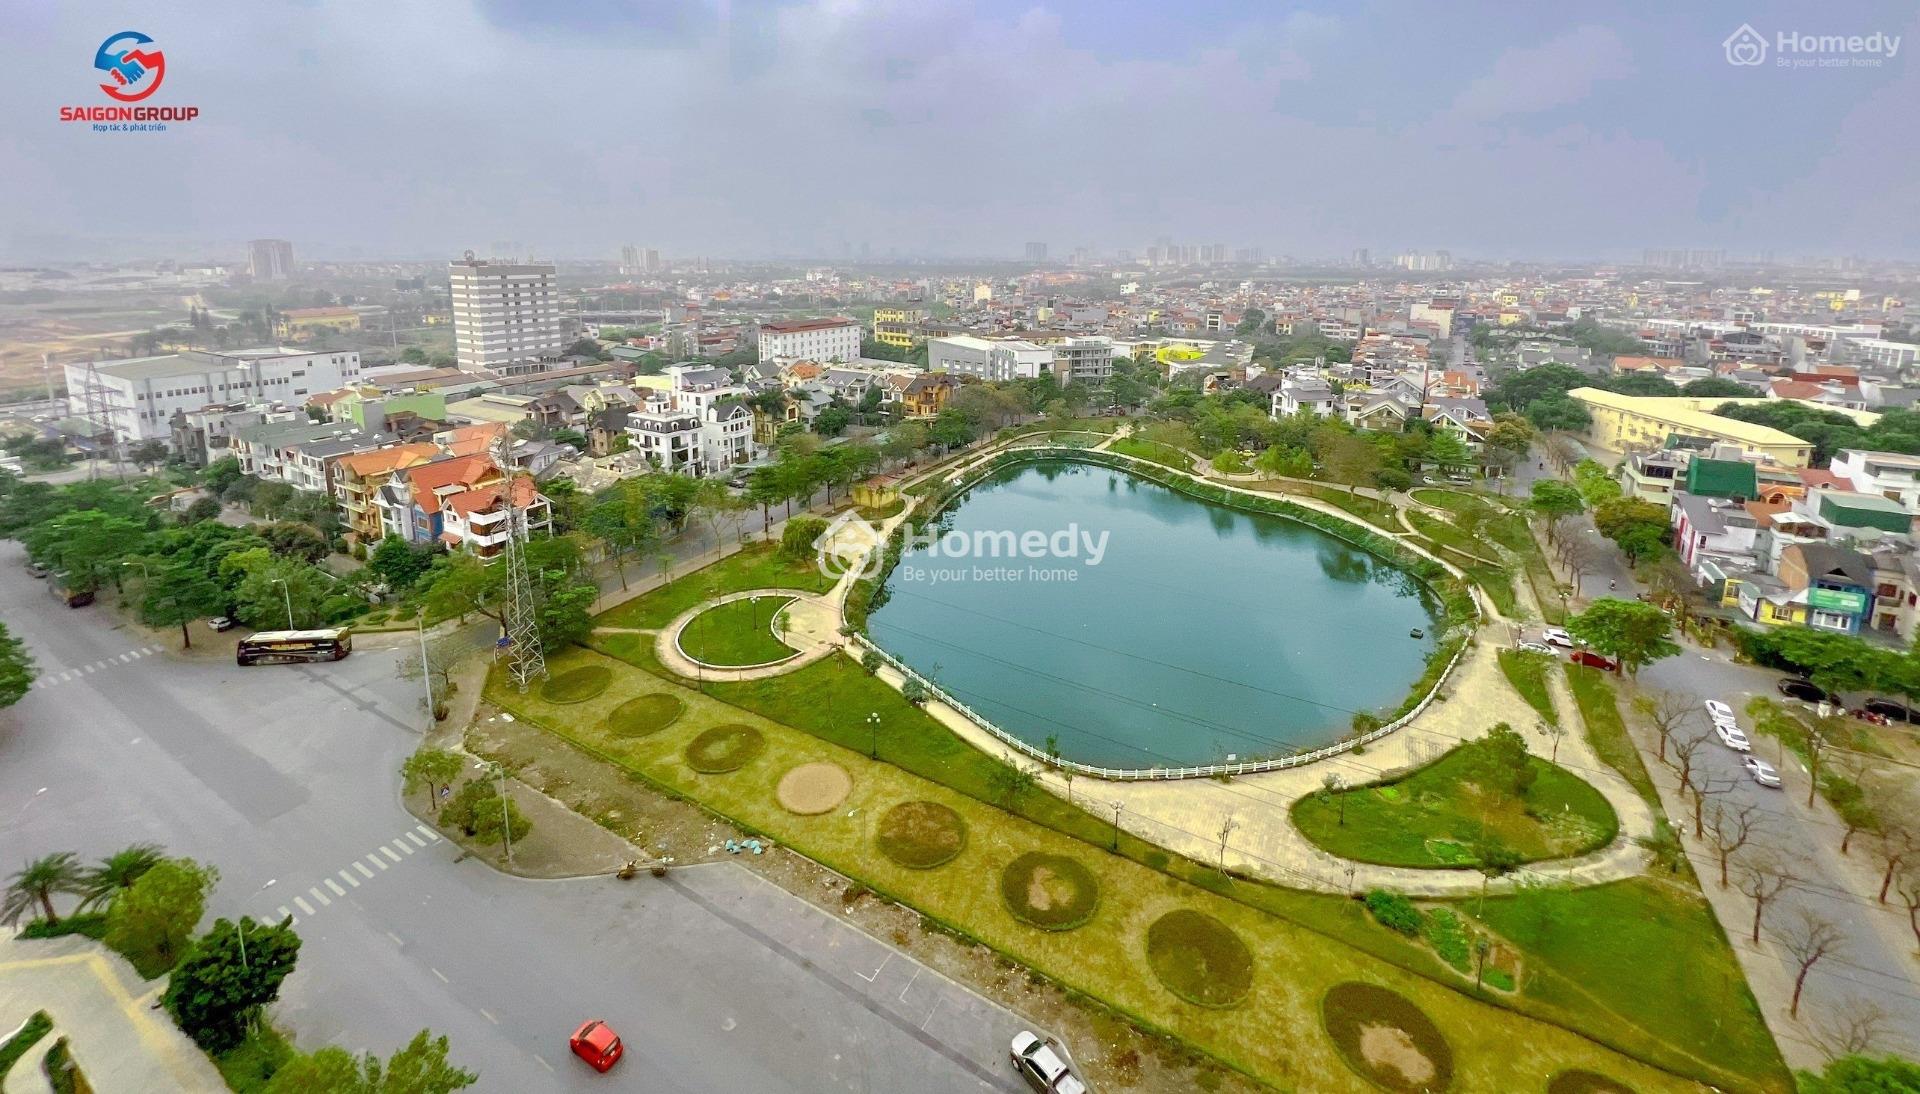 Nhận Nhà Ở Ngay Chung Cư Le Grand Jardin Sài Đông - Quỹ Căn View Hồ Chiết Khấu 8%, Vay Miễn Lãi